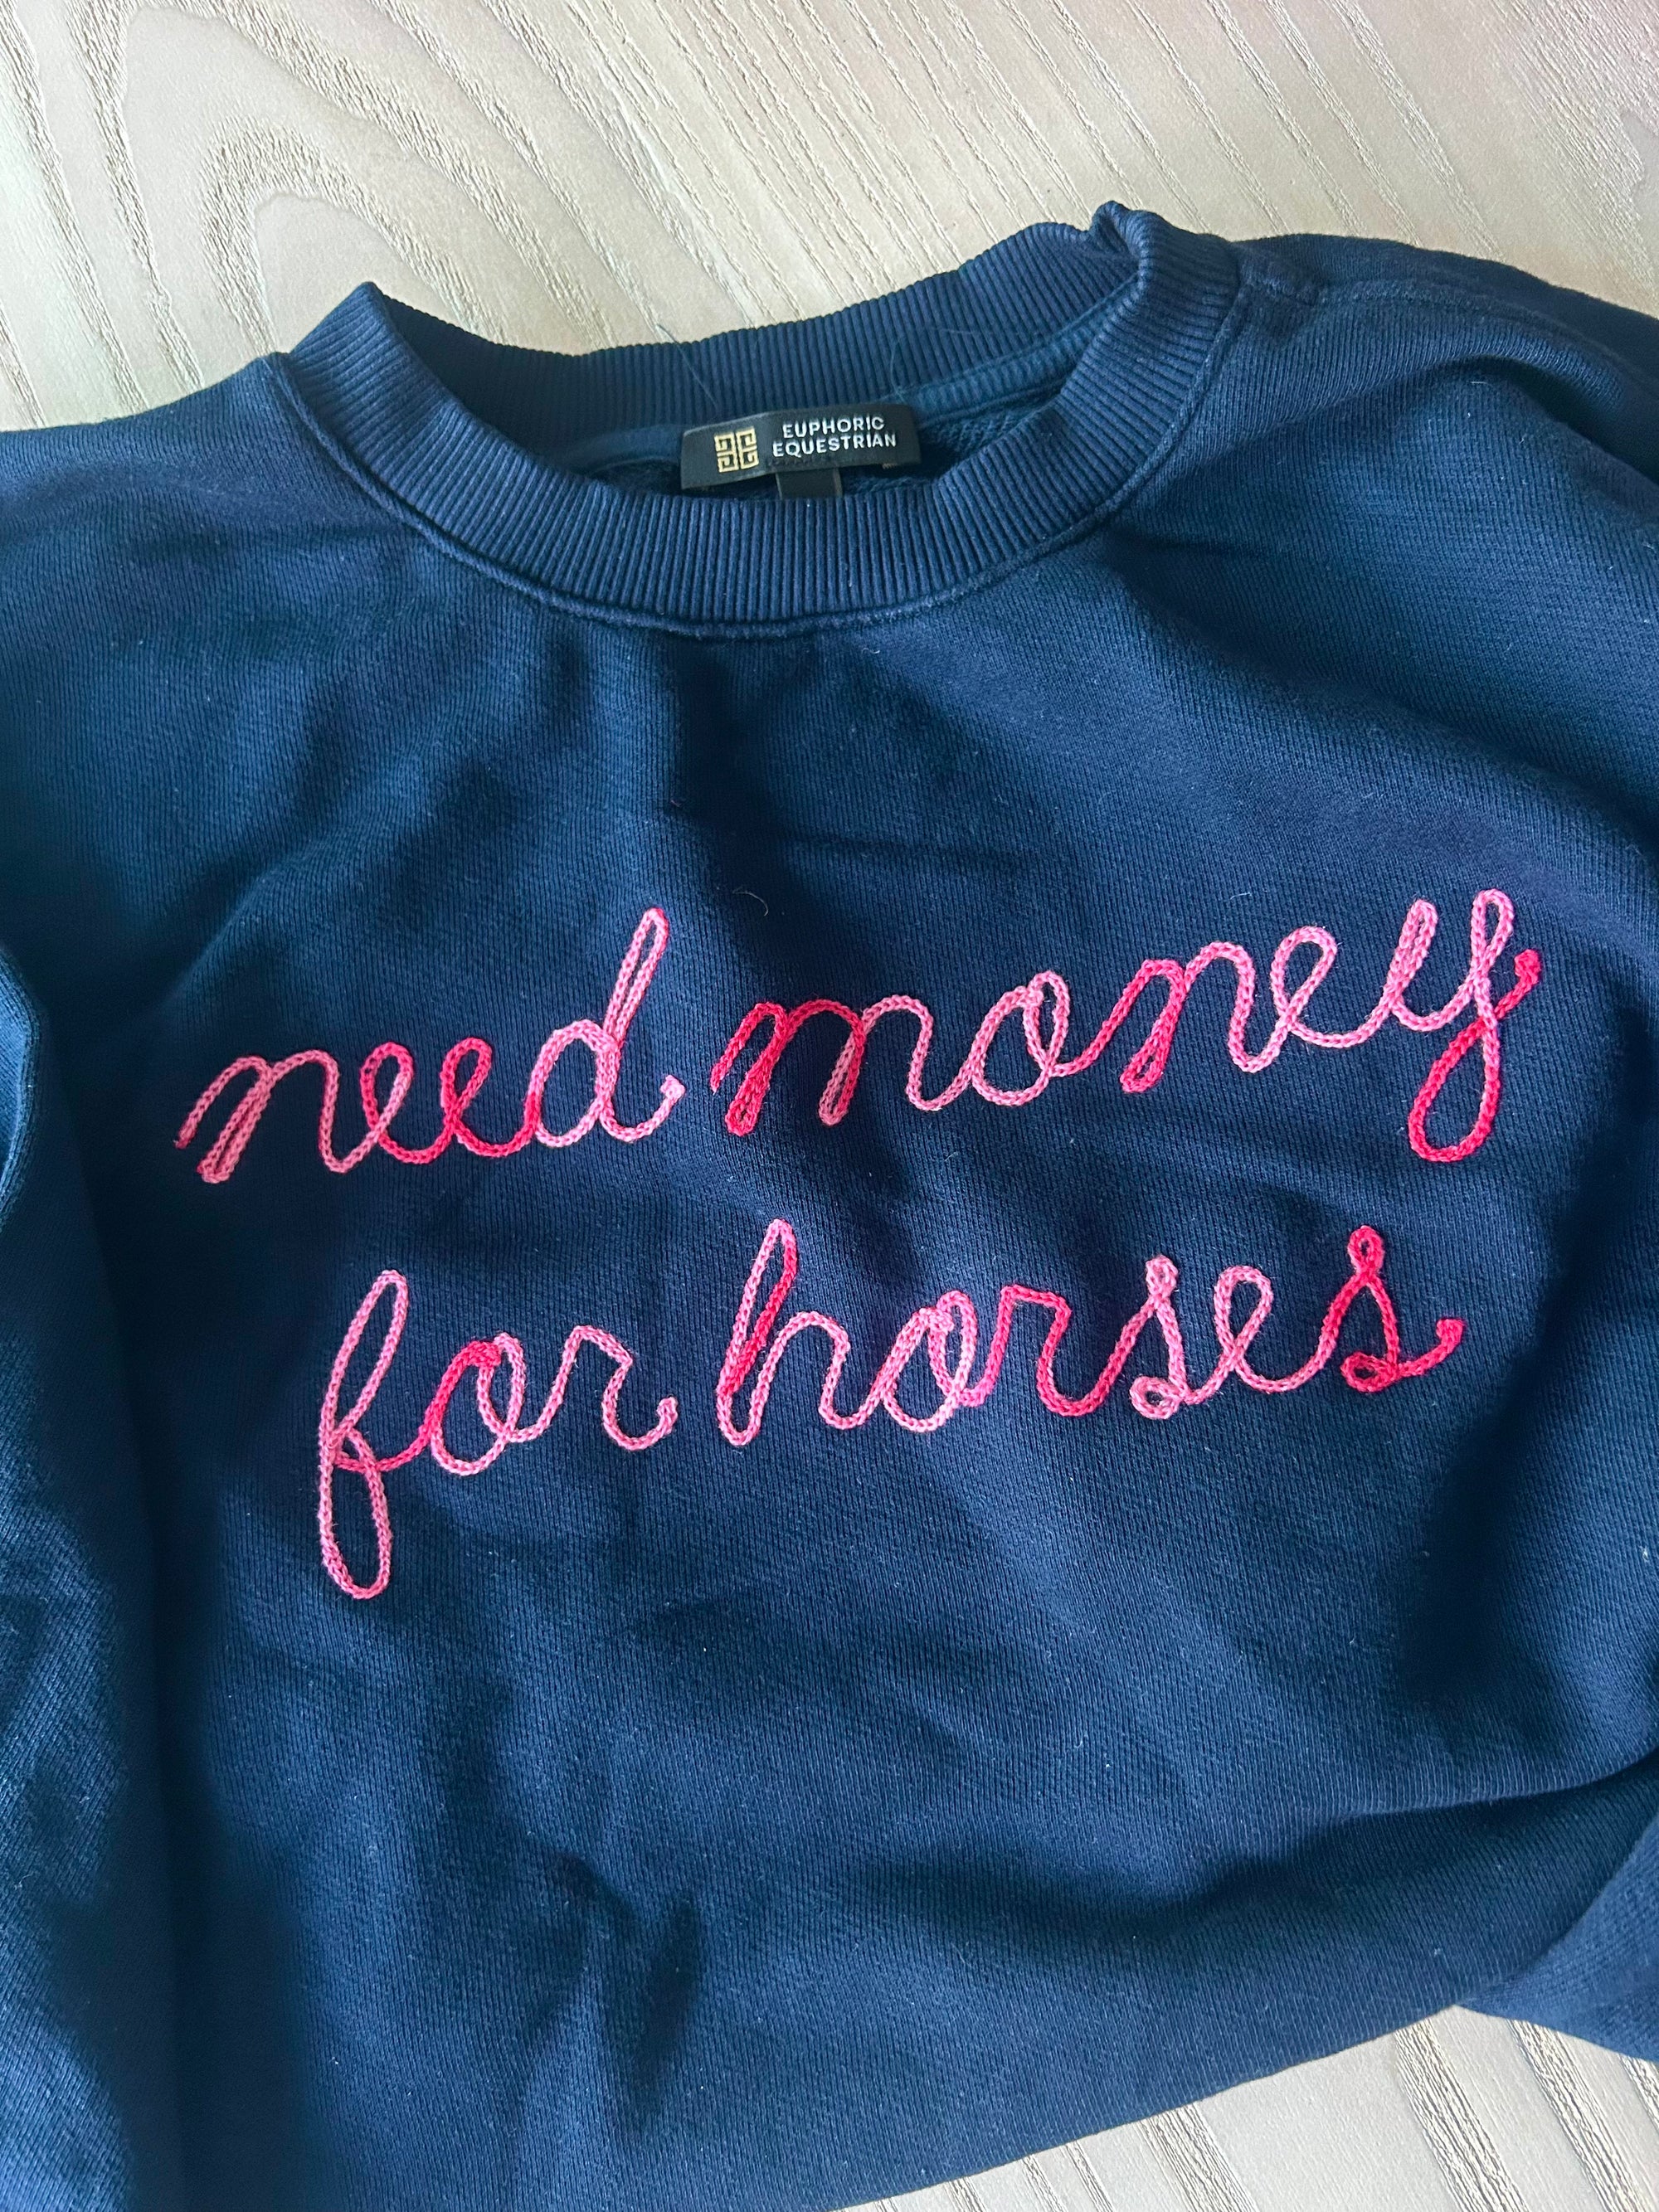 Need $ For Horses (Medium)